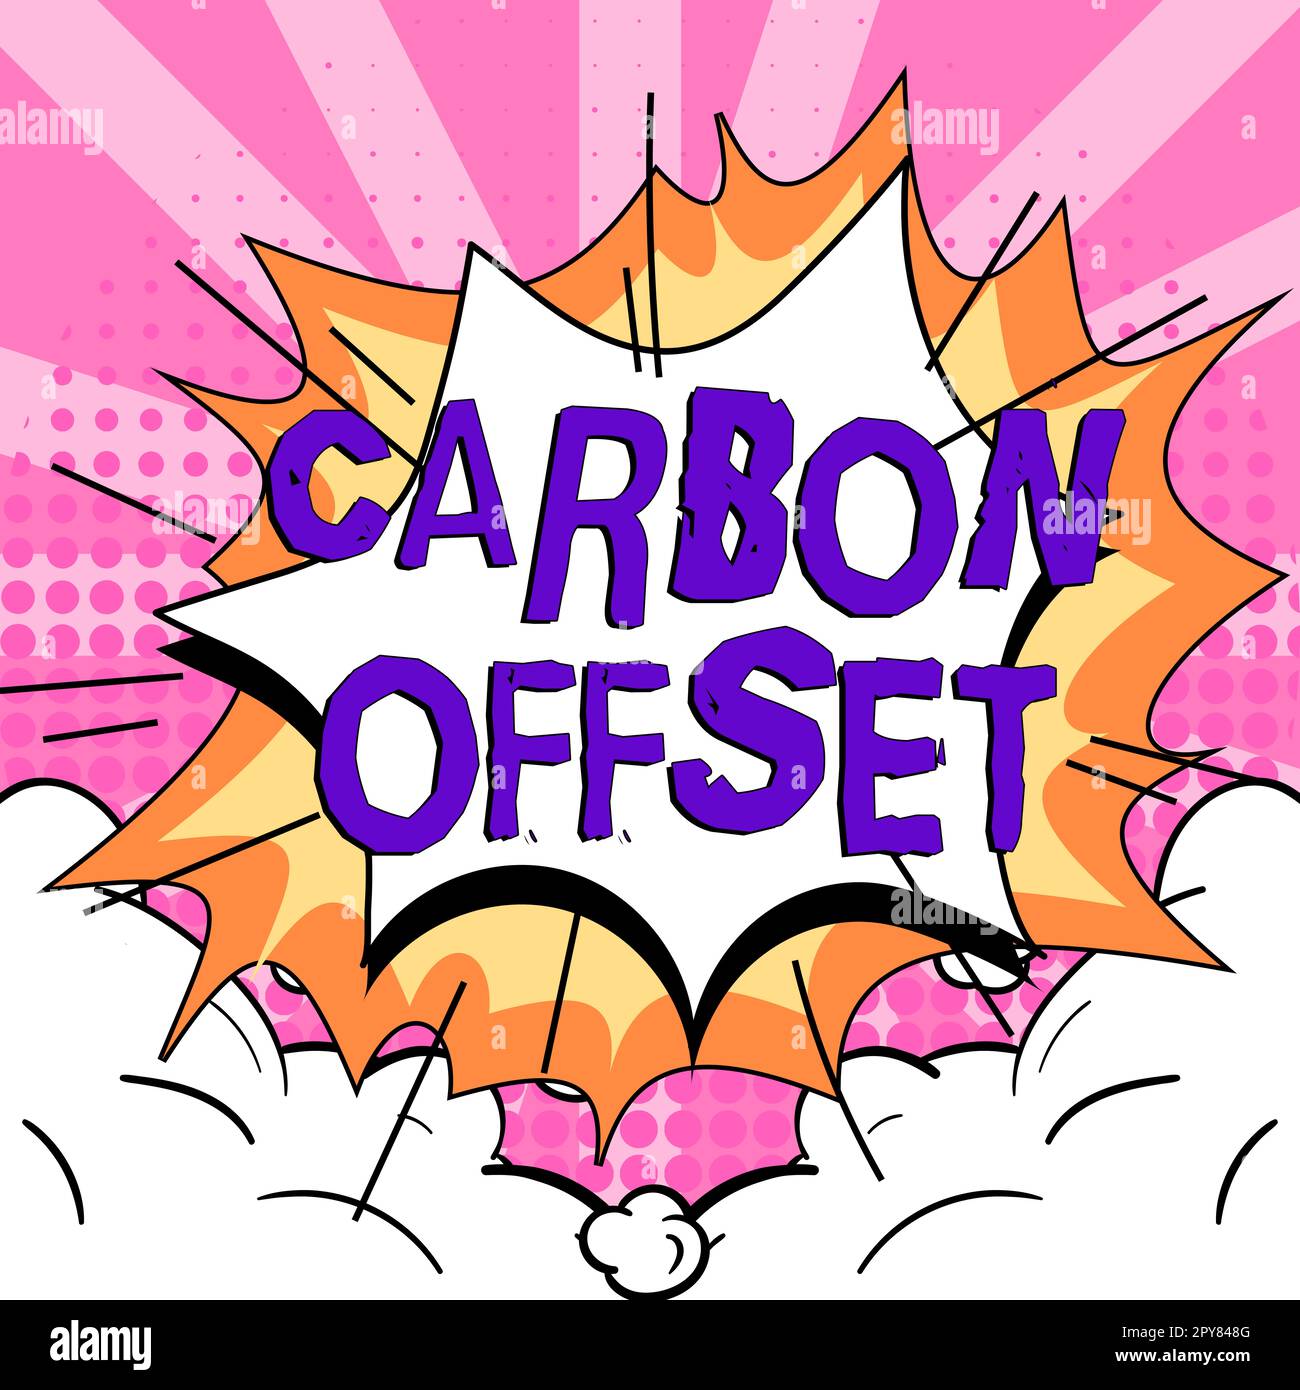 Affichage conceptuel décalage carbone. Concept d'Internet réduction des émissions de dioxyde de carbone ou d'autres gaz Banque D'Images